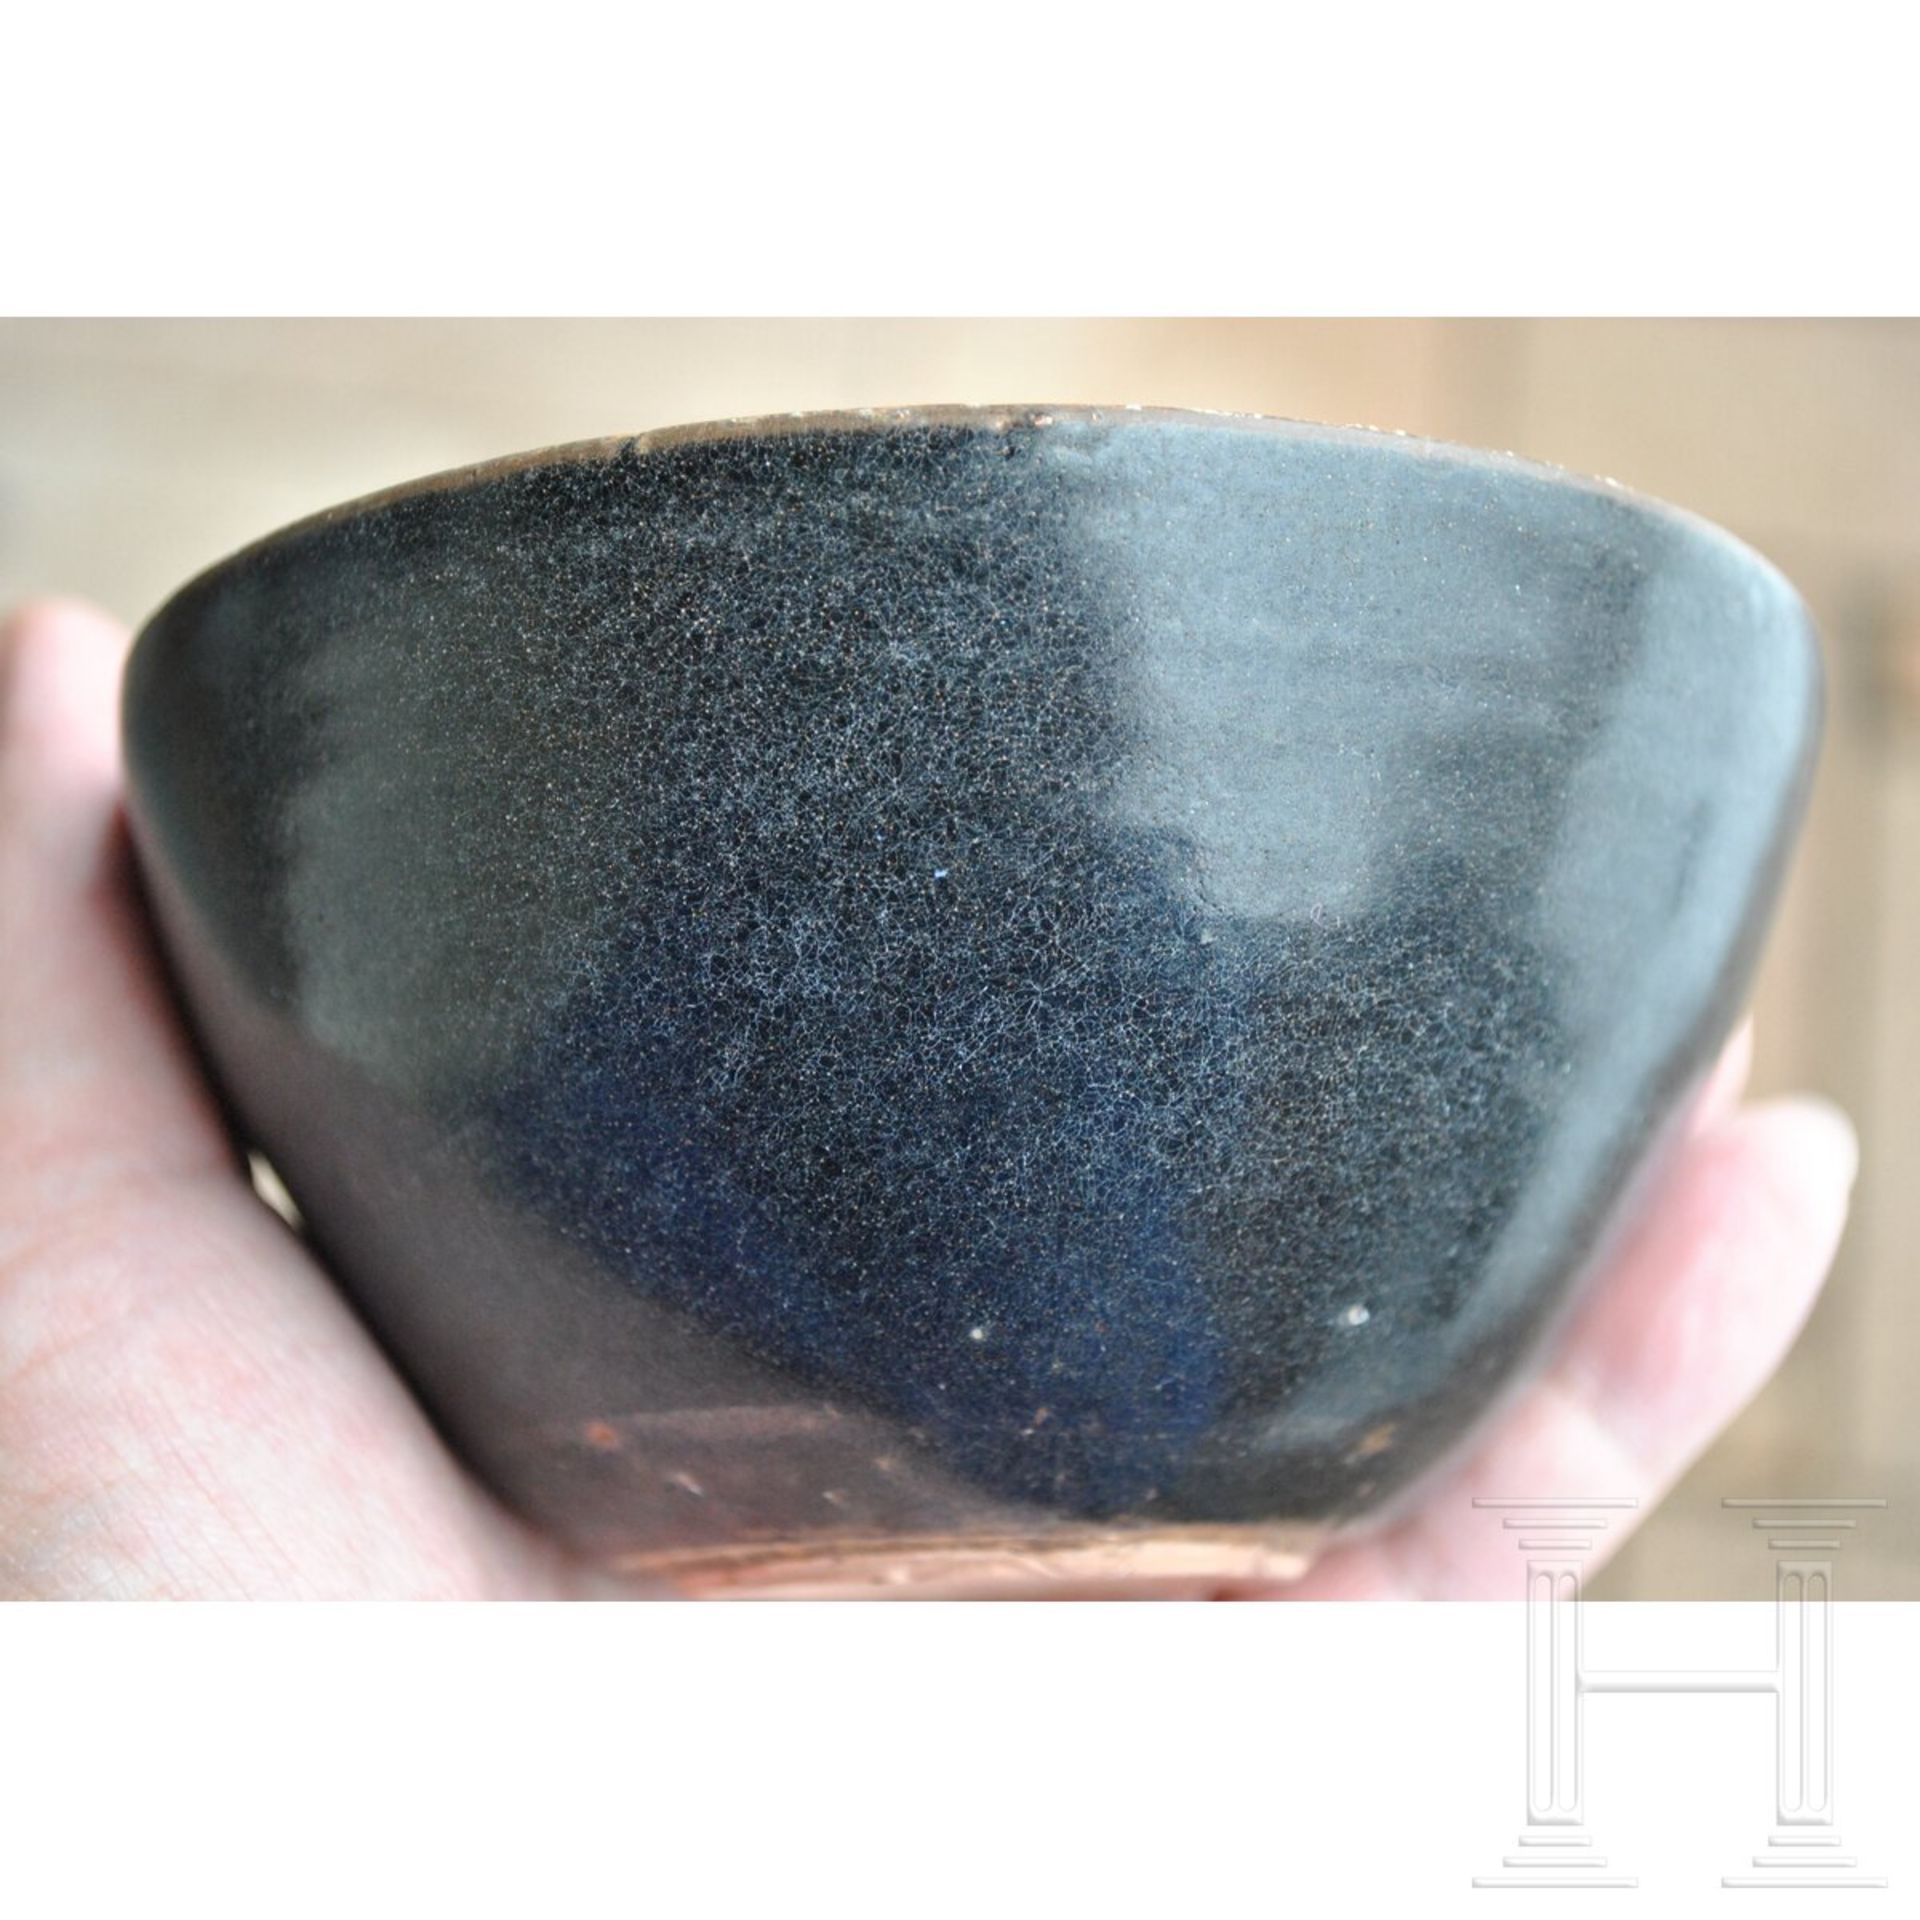 Jizhou-Teeschale, schwarz glasiert, wohl südliche Song-Dynastie (12. - 13. Jhdt.) - Image 15 of 17